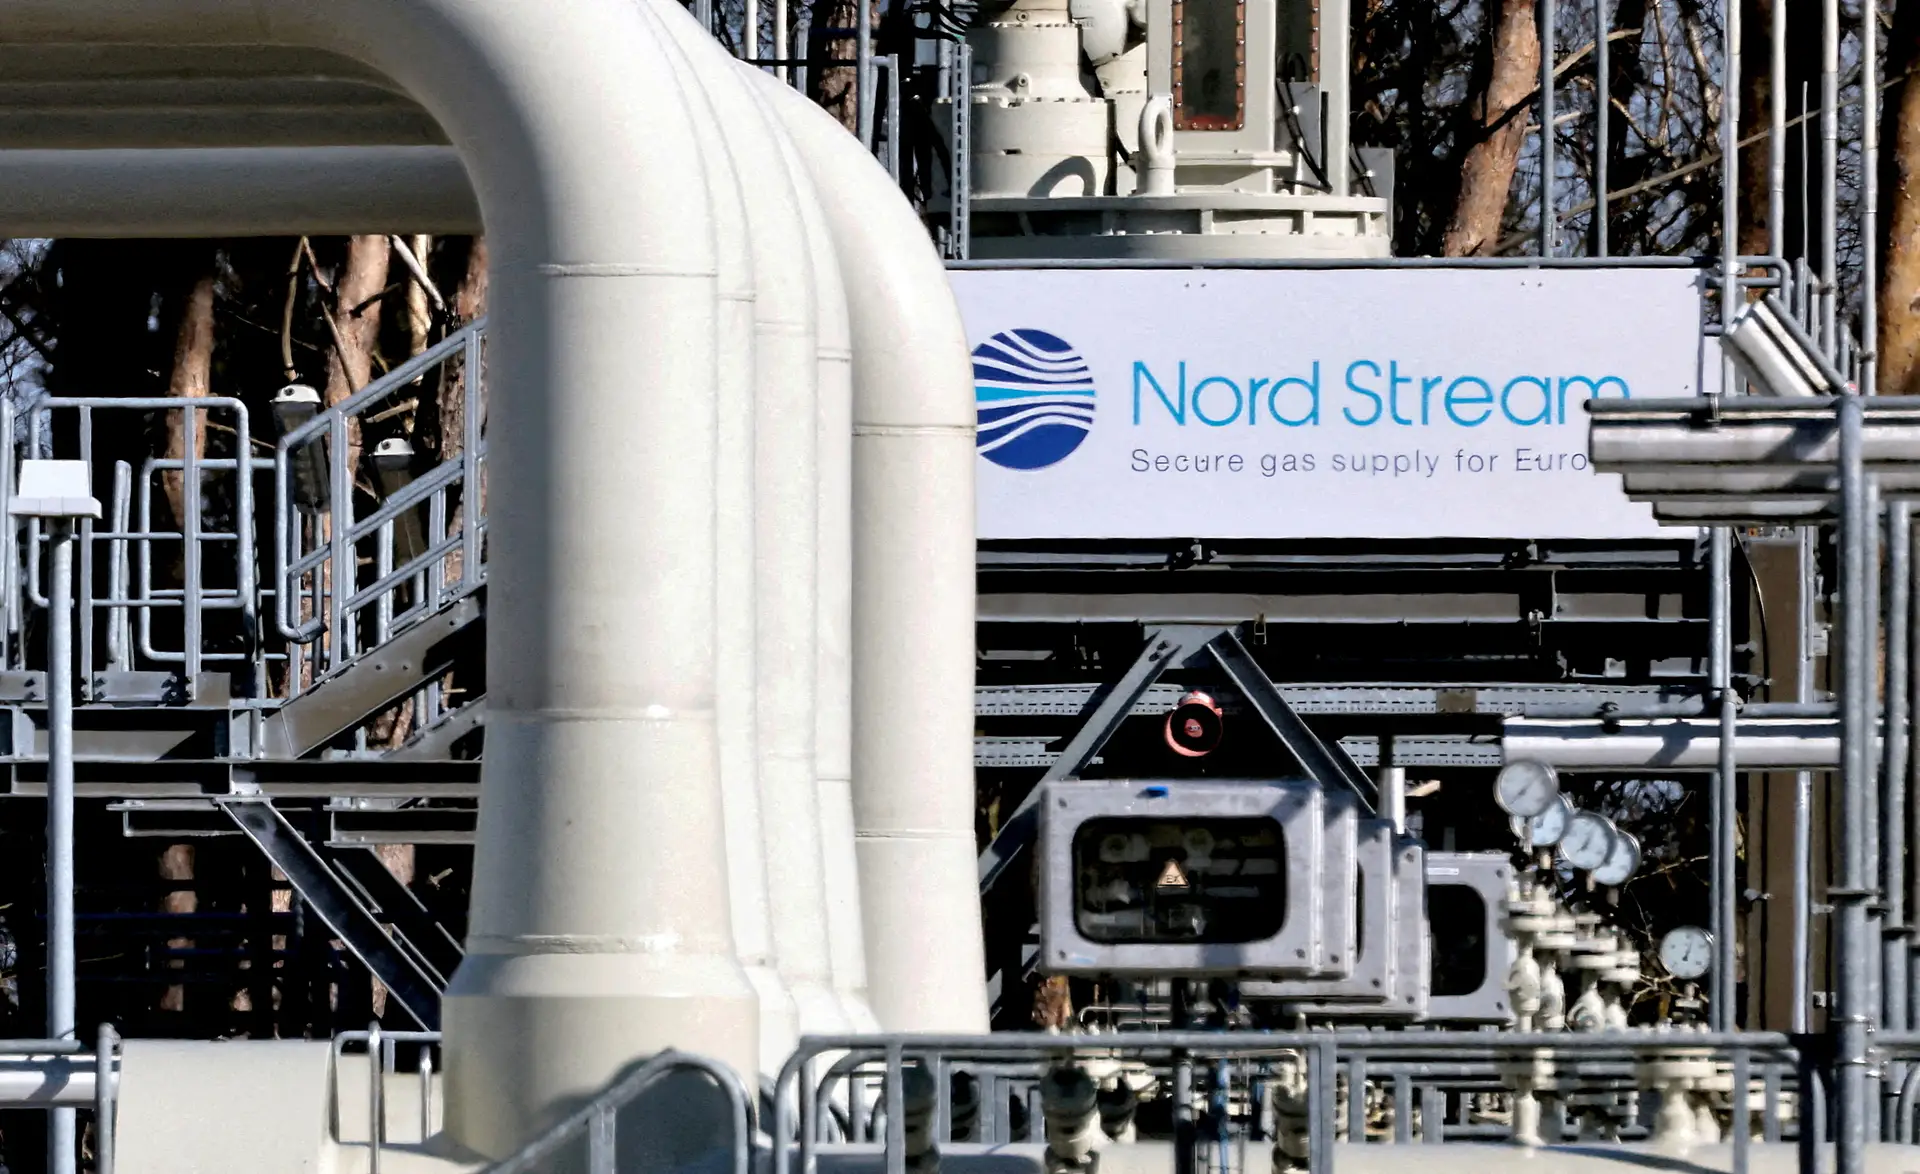 Gasodutos Nord Stream registam novas falhas nos tubos do Mar Báltico